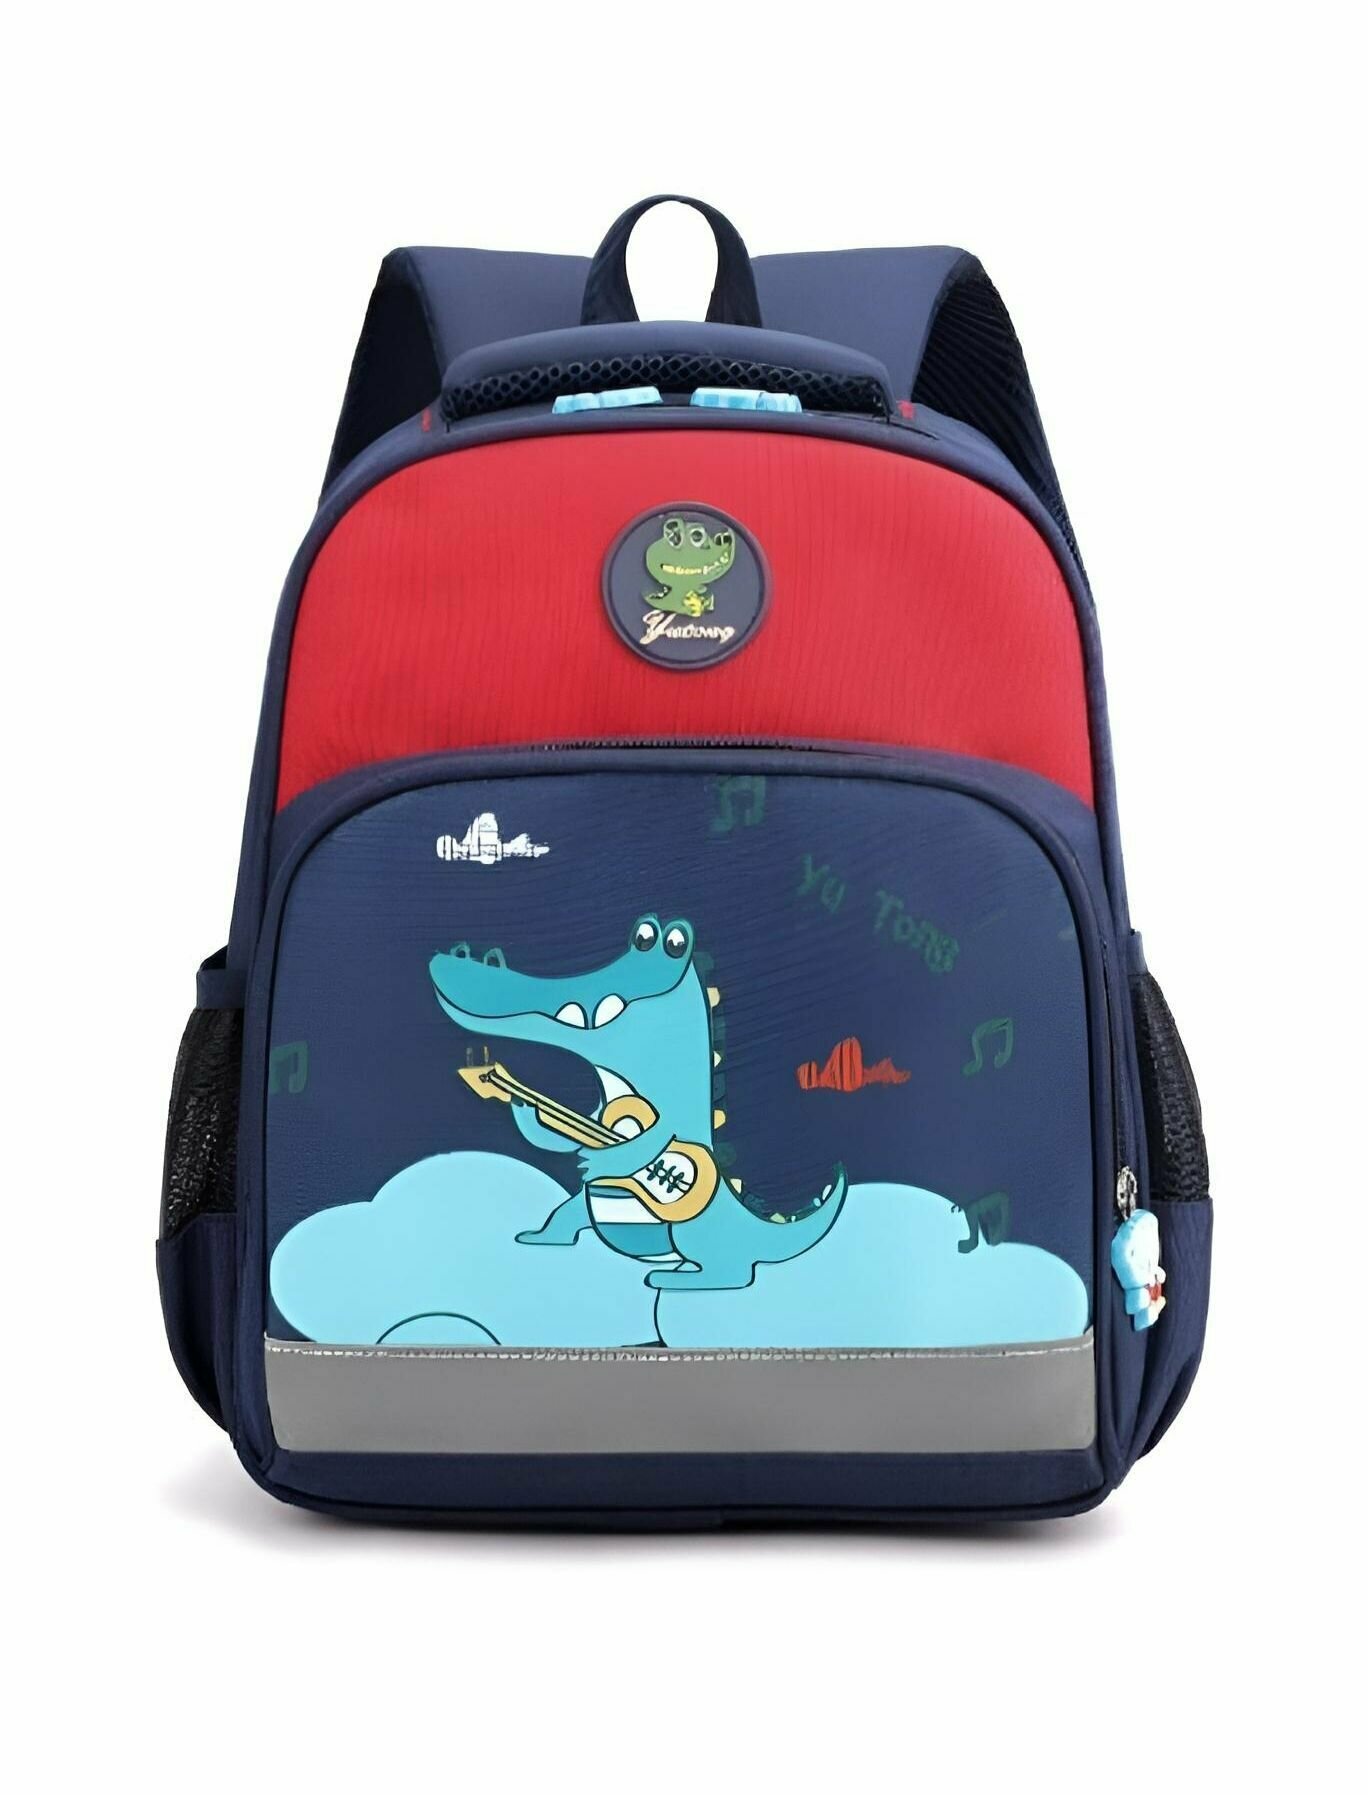 Рюкзак школьный для девочки, мальчика/для первоклассника/ для начальной школы облегченный/ранец дошкольный для детского сада